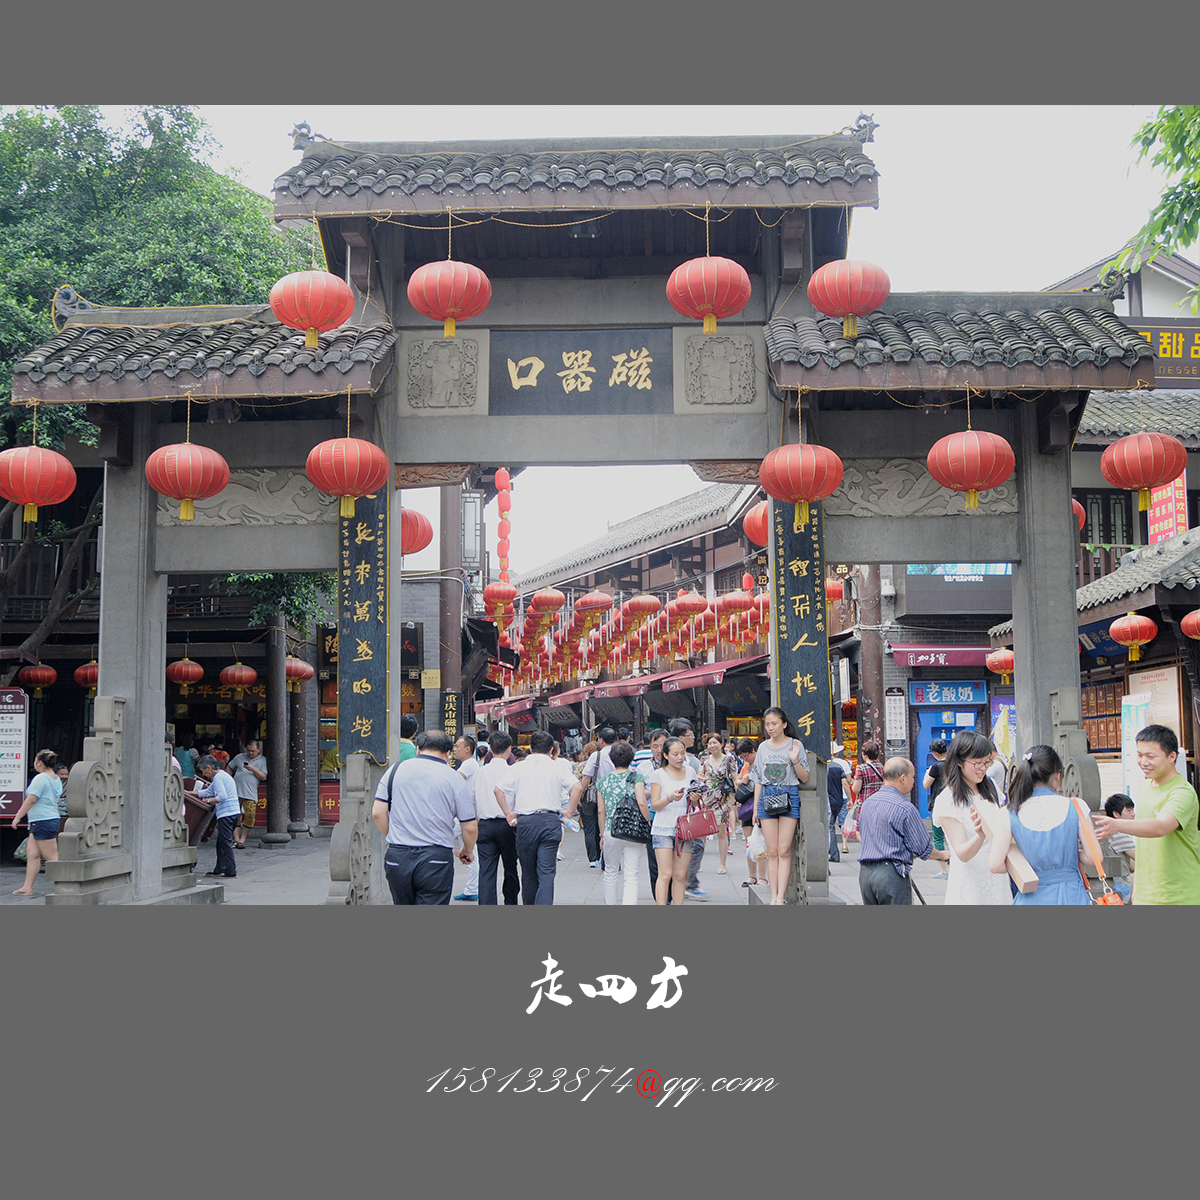 重庆千年古镇磁器口 - 重庆自由行|重庆旅游攻略【重庆自由行门票预订】